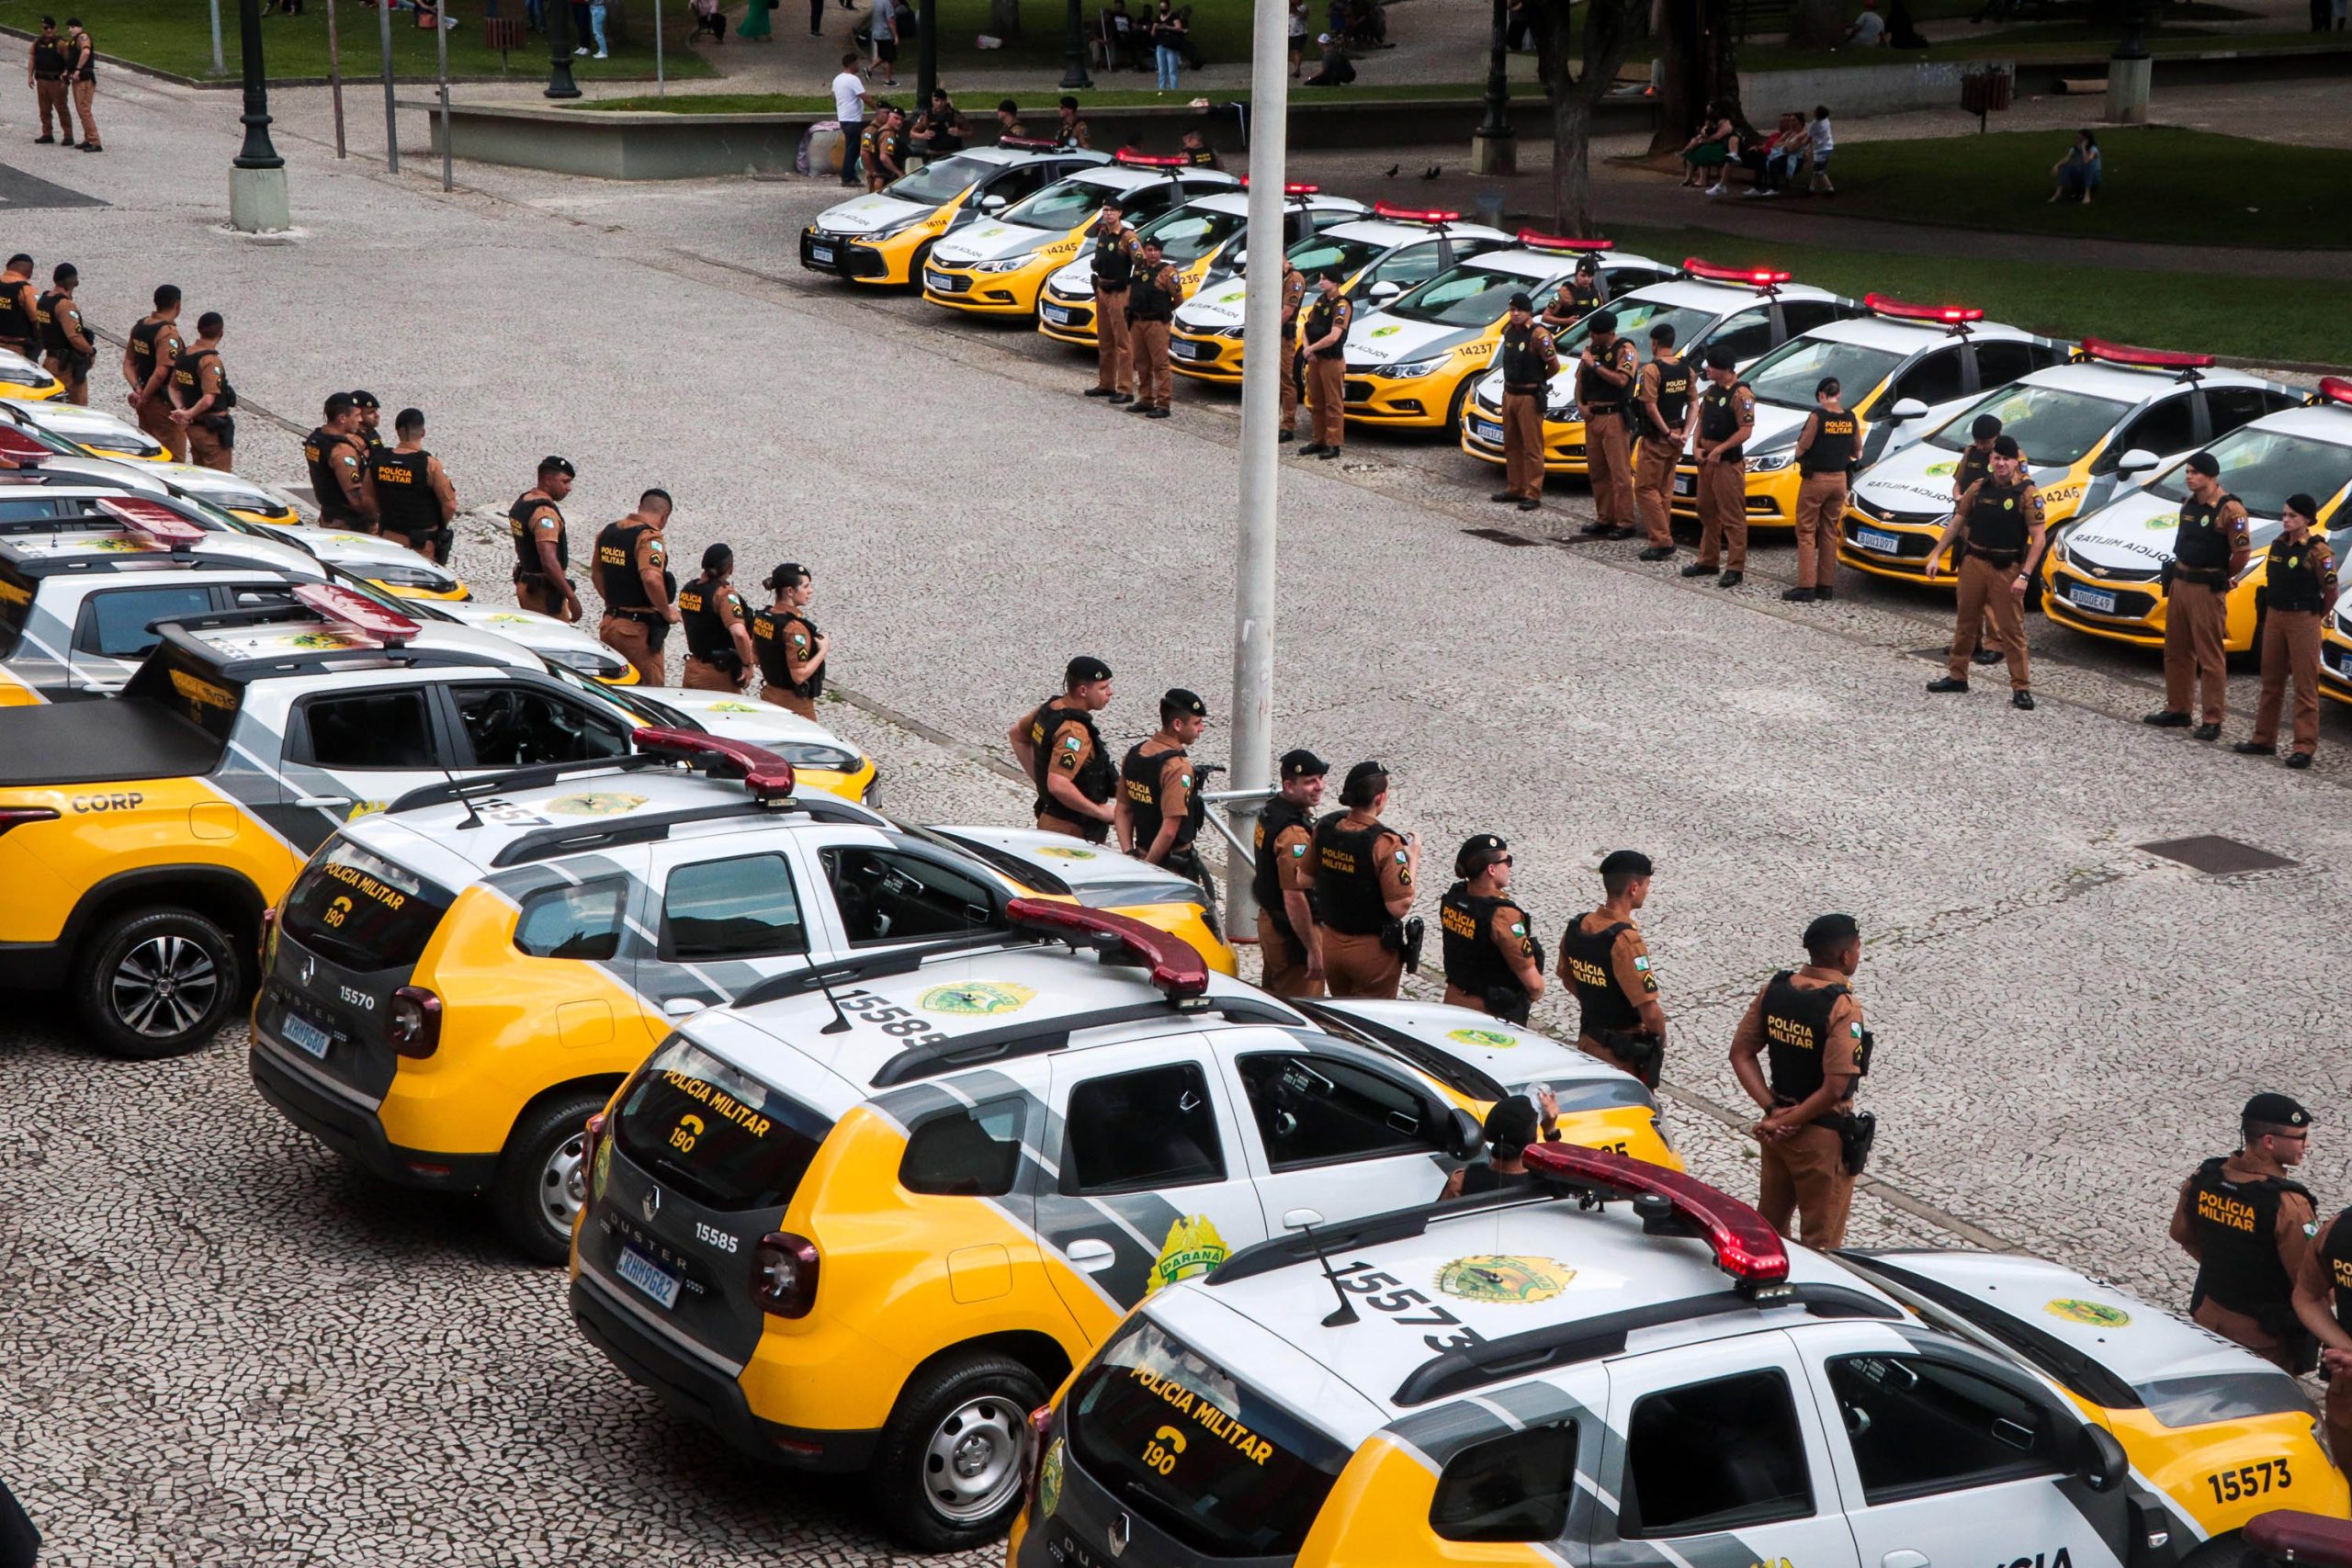 Nova Companhia da PM reforça policiamento nos bairros de Curitiba e Região Metropolitana